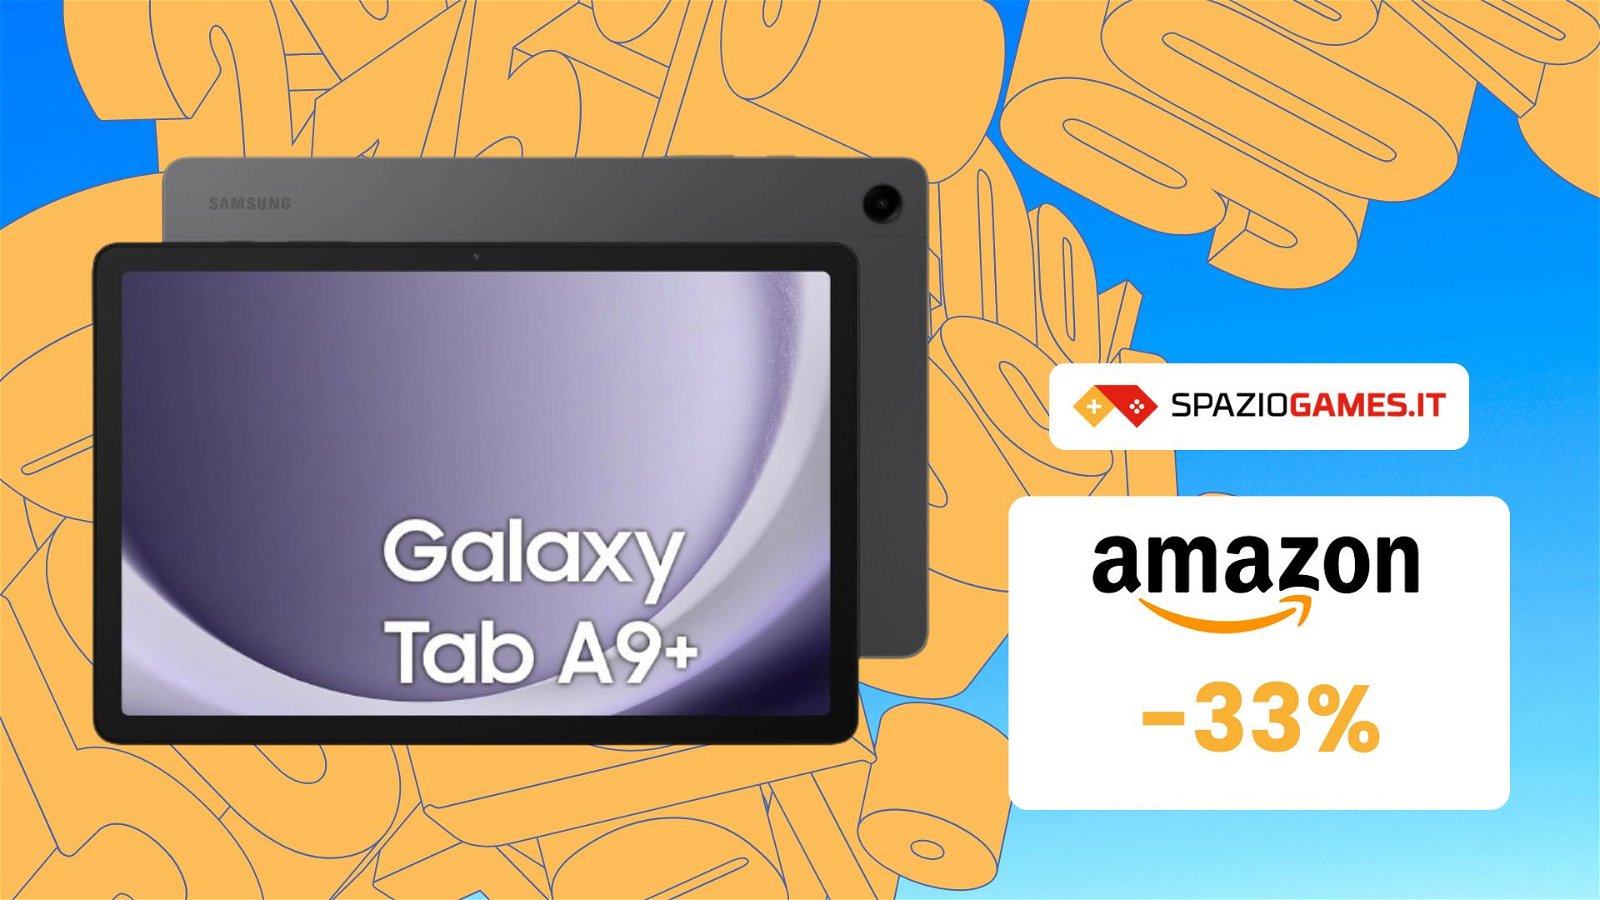 IMPERDIBILE SCONTO del 33% sul tablet Samsung Galaxy Tab A9+!